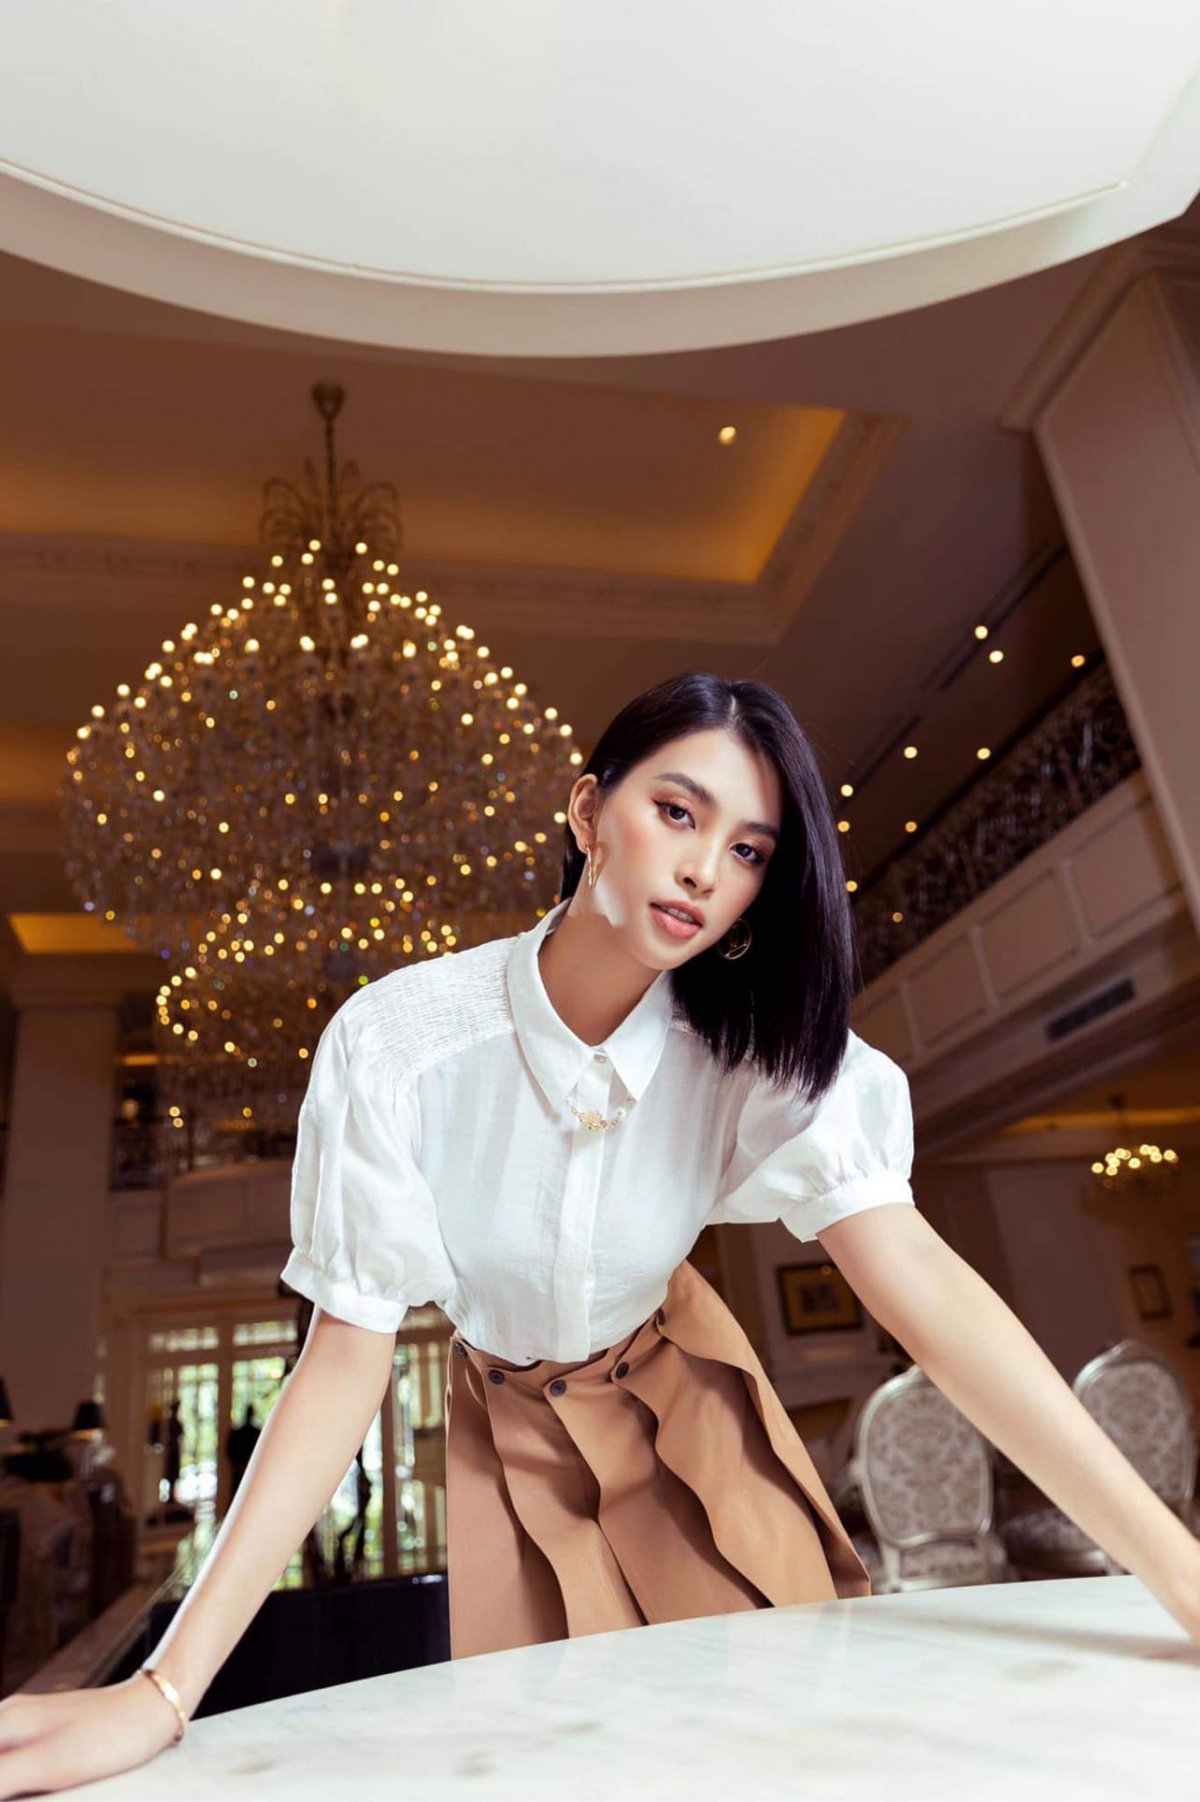 Hoa hậu Tiểu Vy khoe sắc xinh đẹp dưới nắng ở quê nhà Hội An - Ảnh 8.